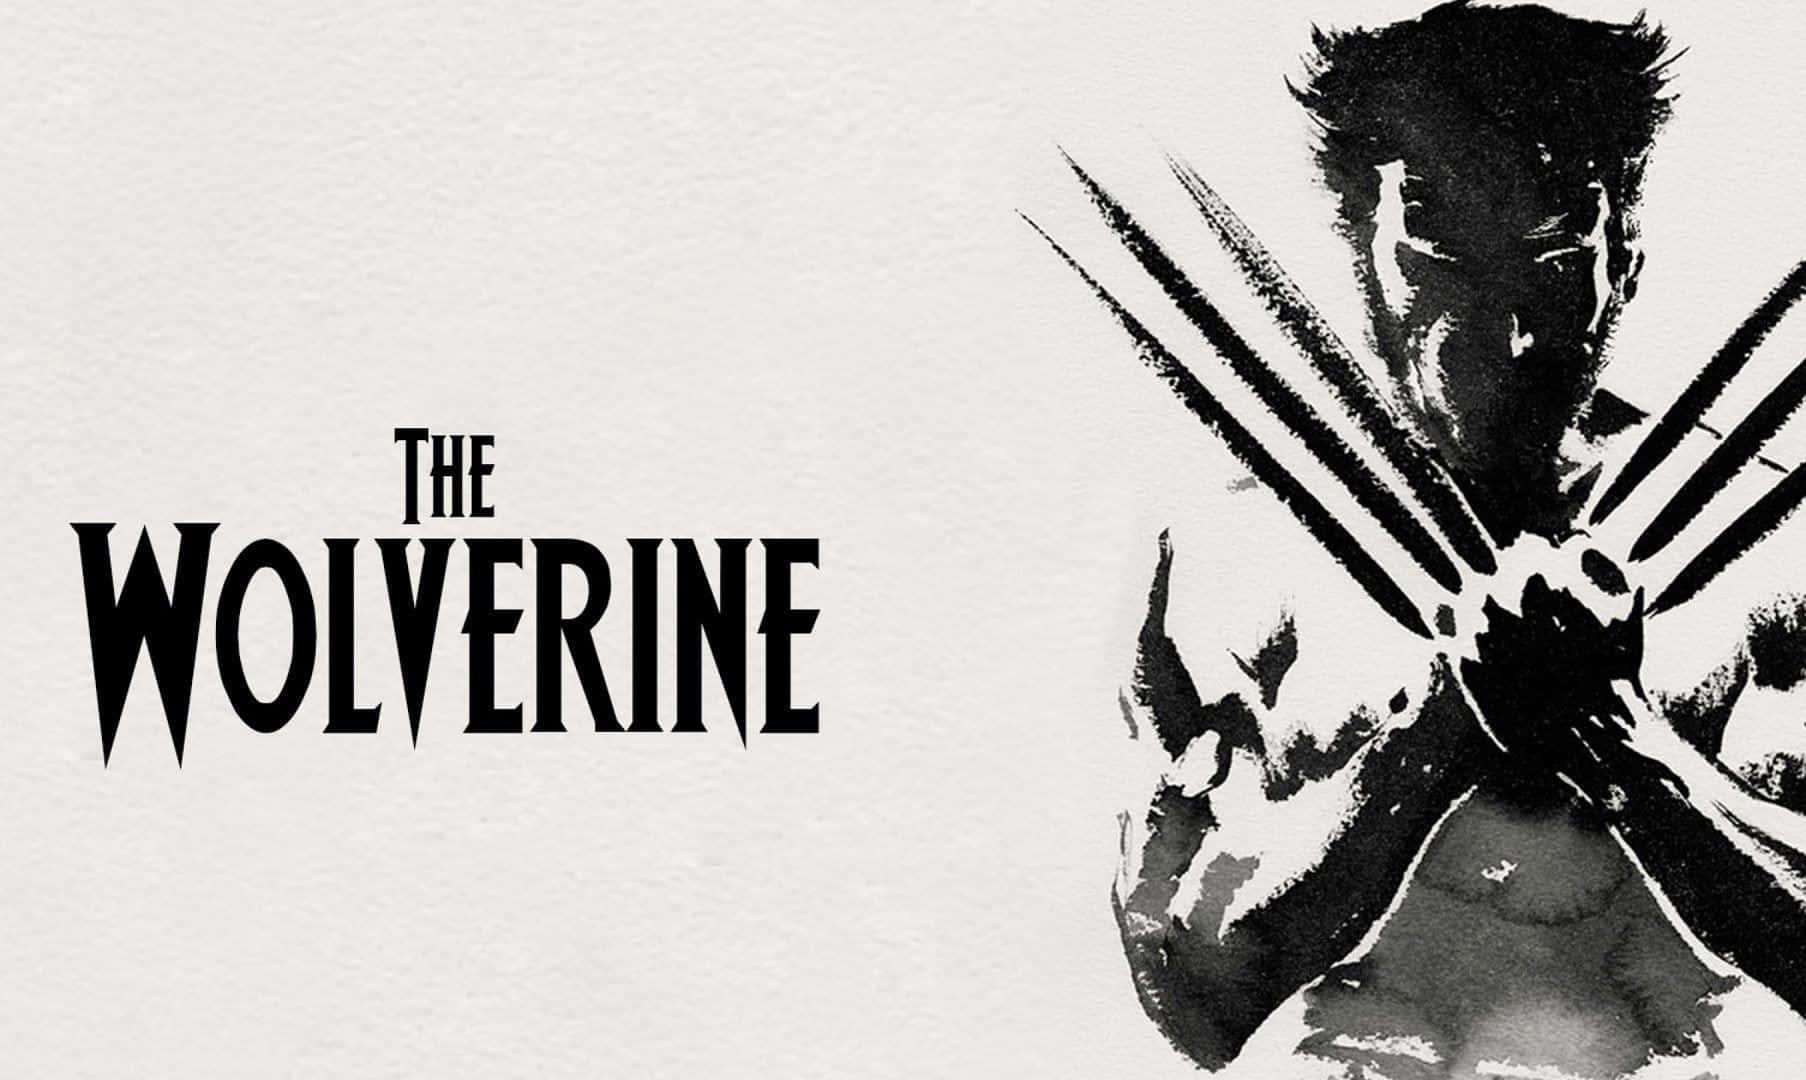 Wolverinelisto Para La Batalla.